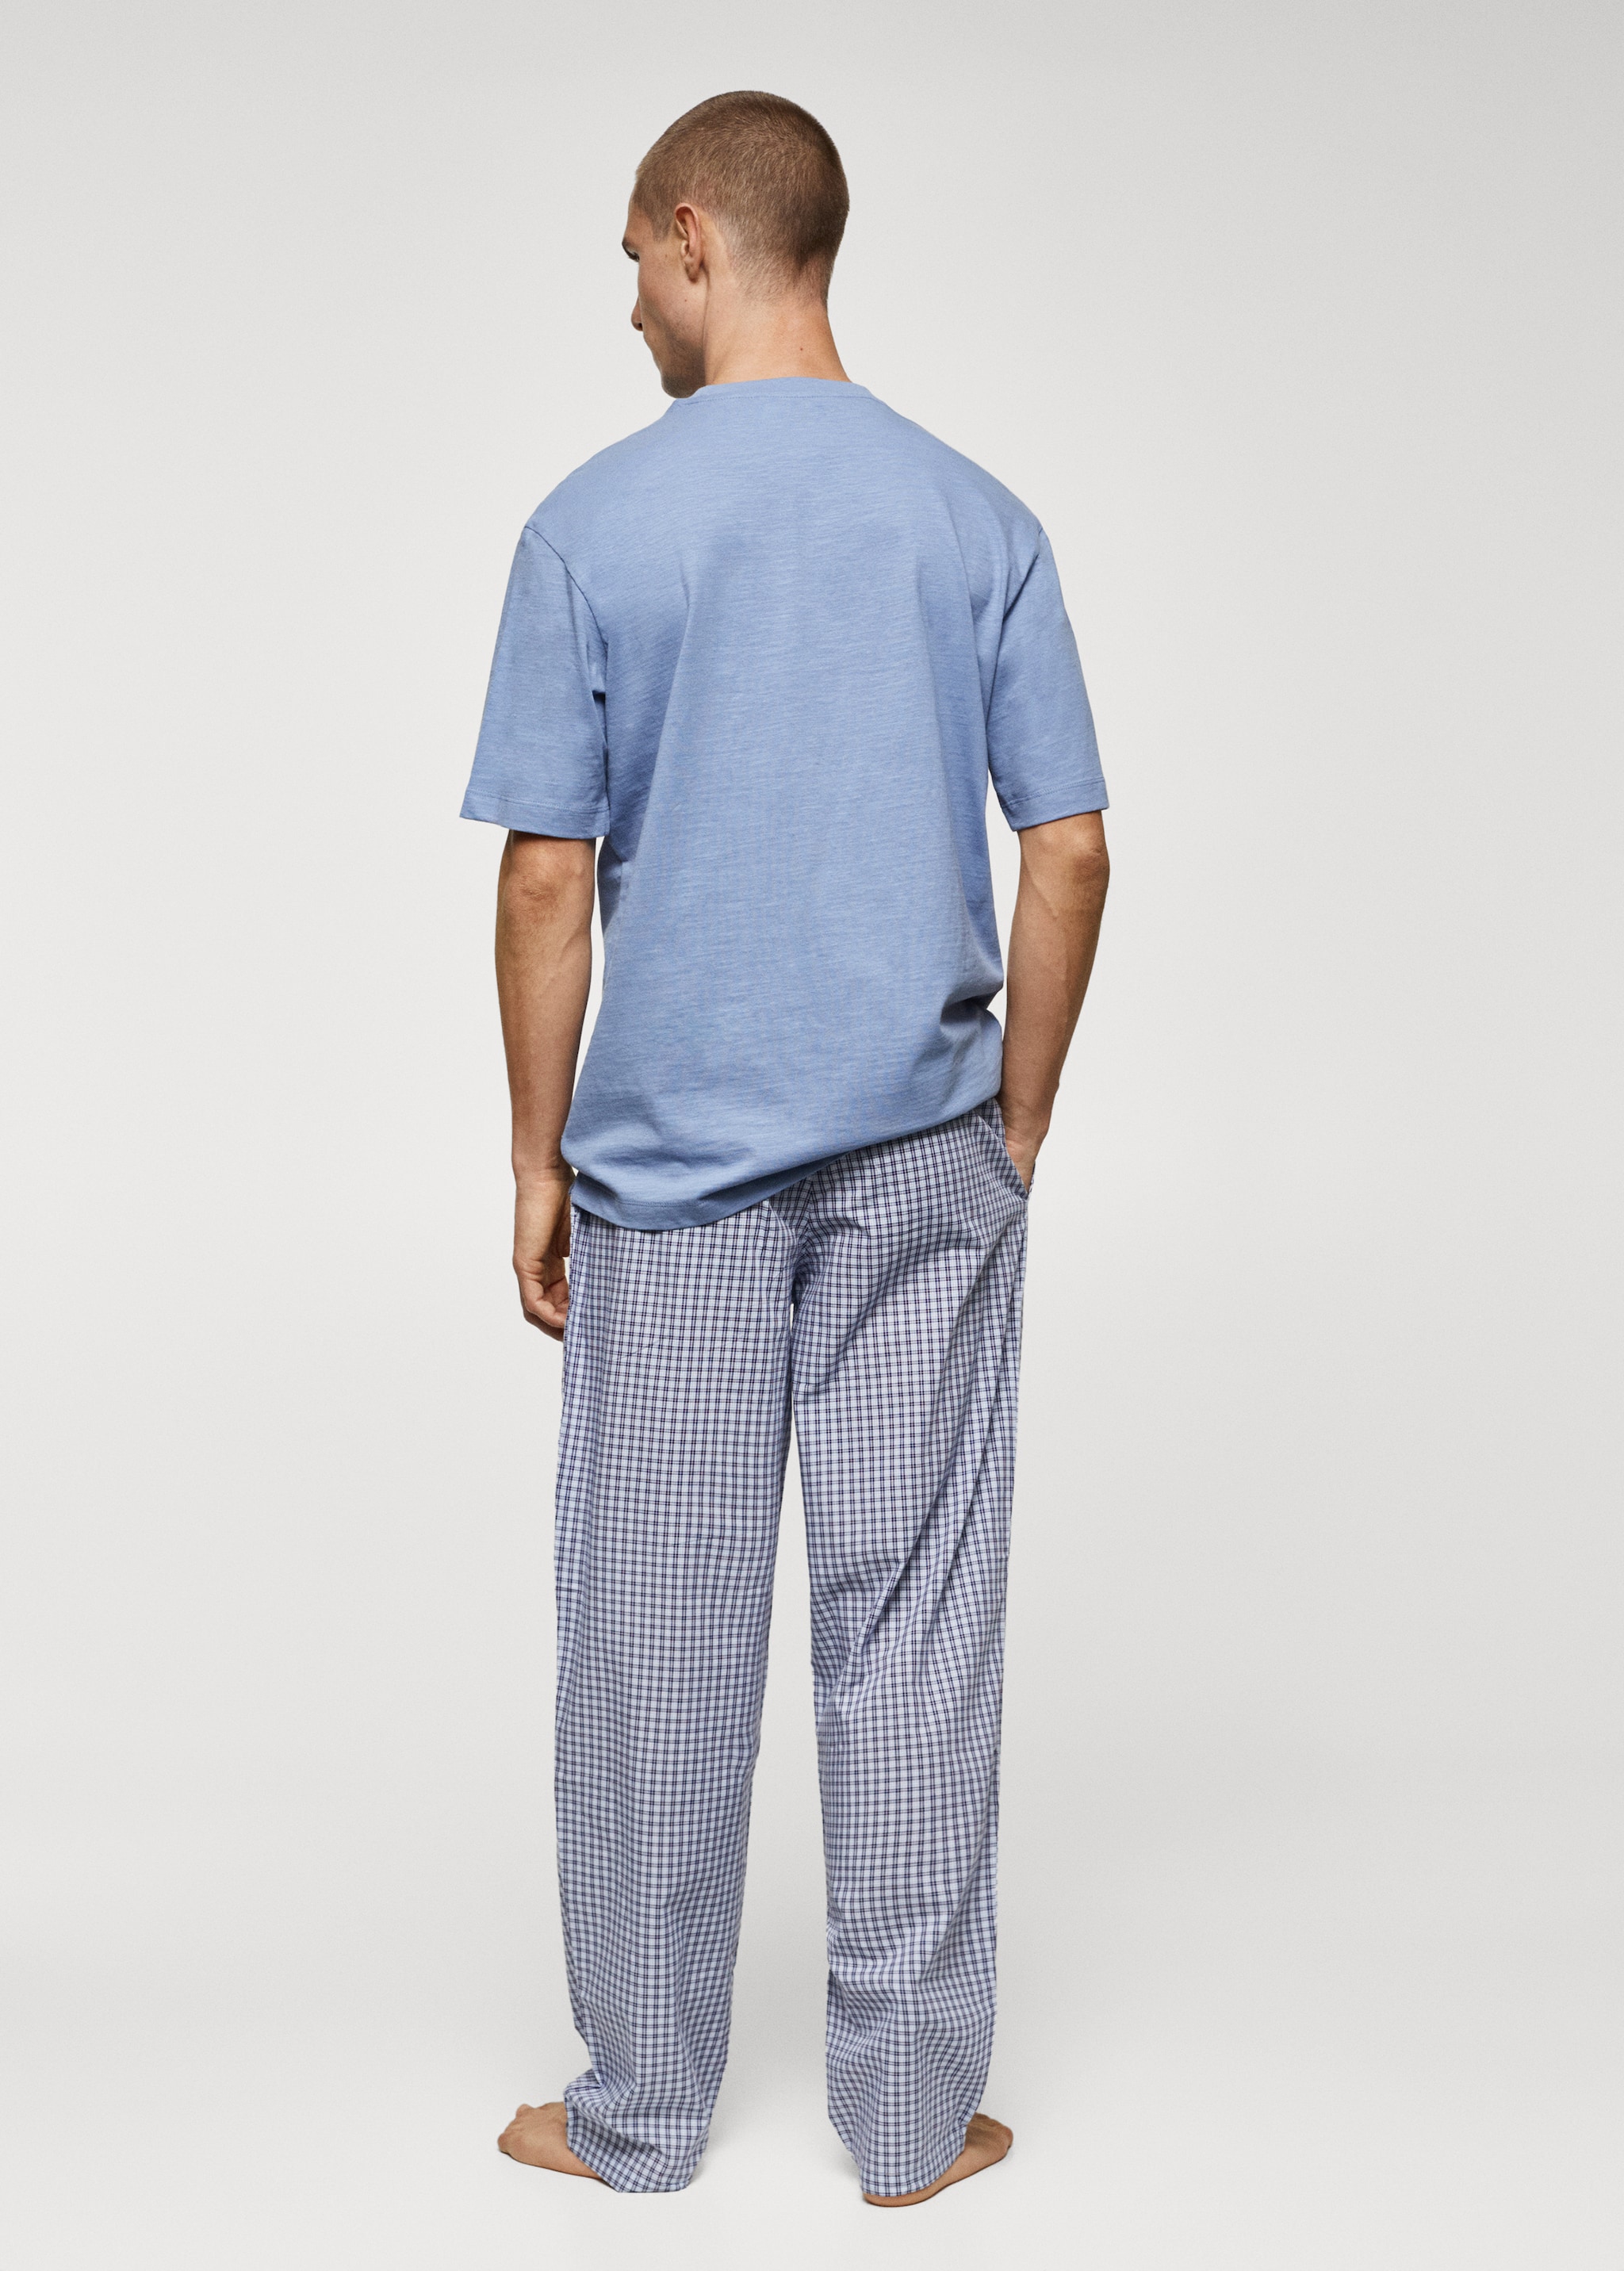 Комплект пижама из хлопка в клетку - Обратная сторона изделия